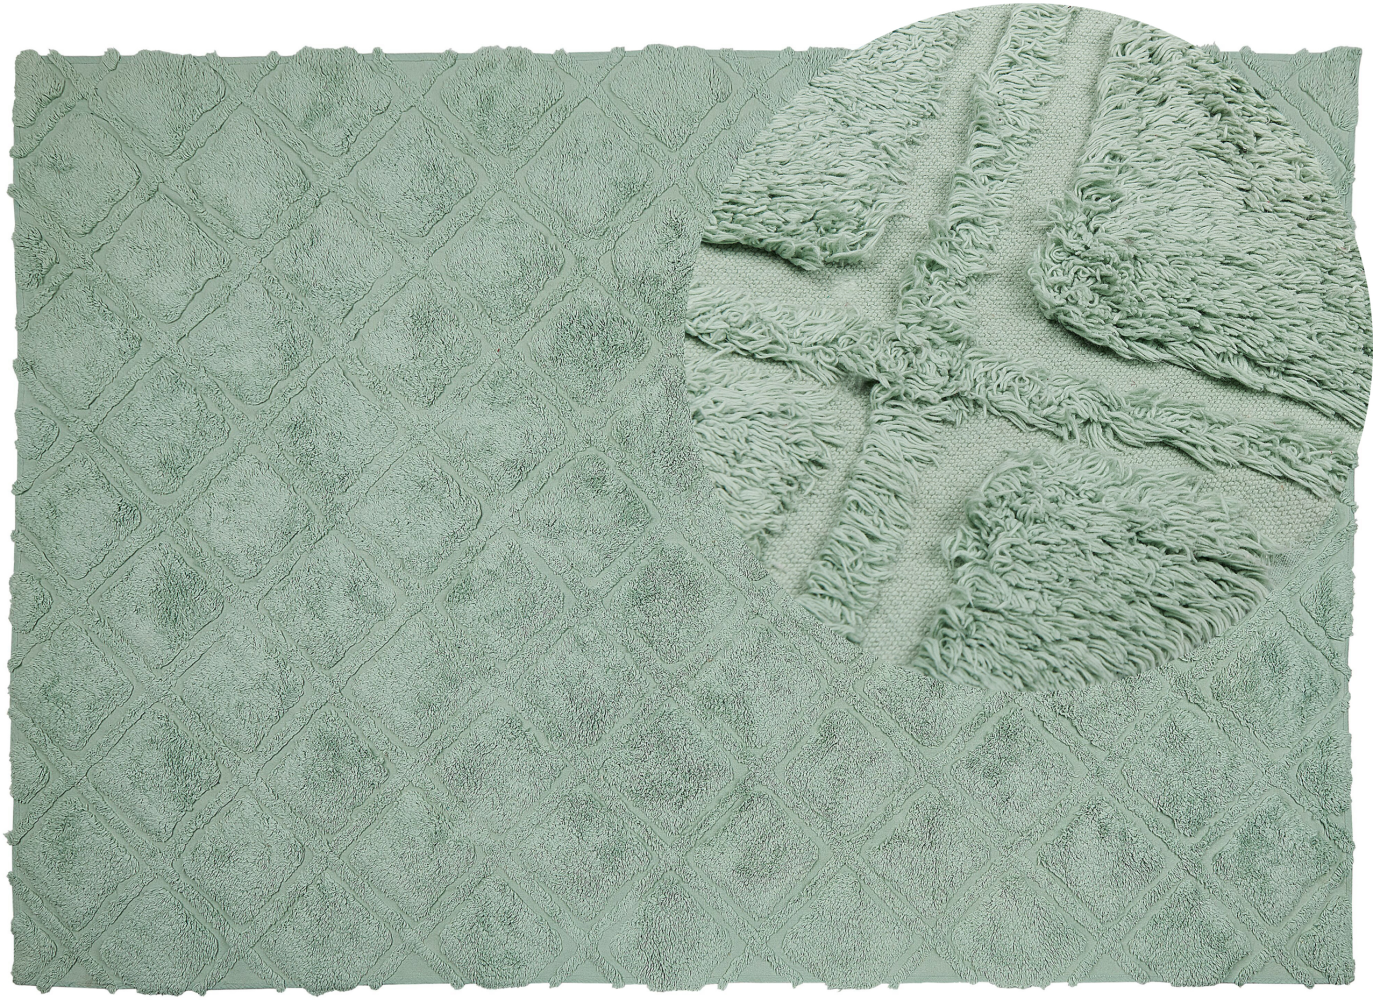 Teppich Baumwolle hellgrün 160 x 230 cm geometrisches Muster Kurzflor HATAY Bild 1